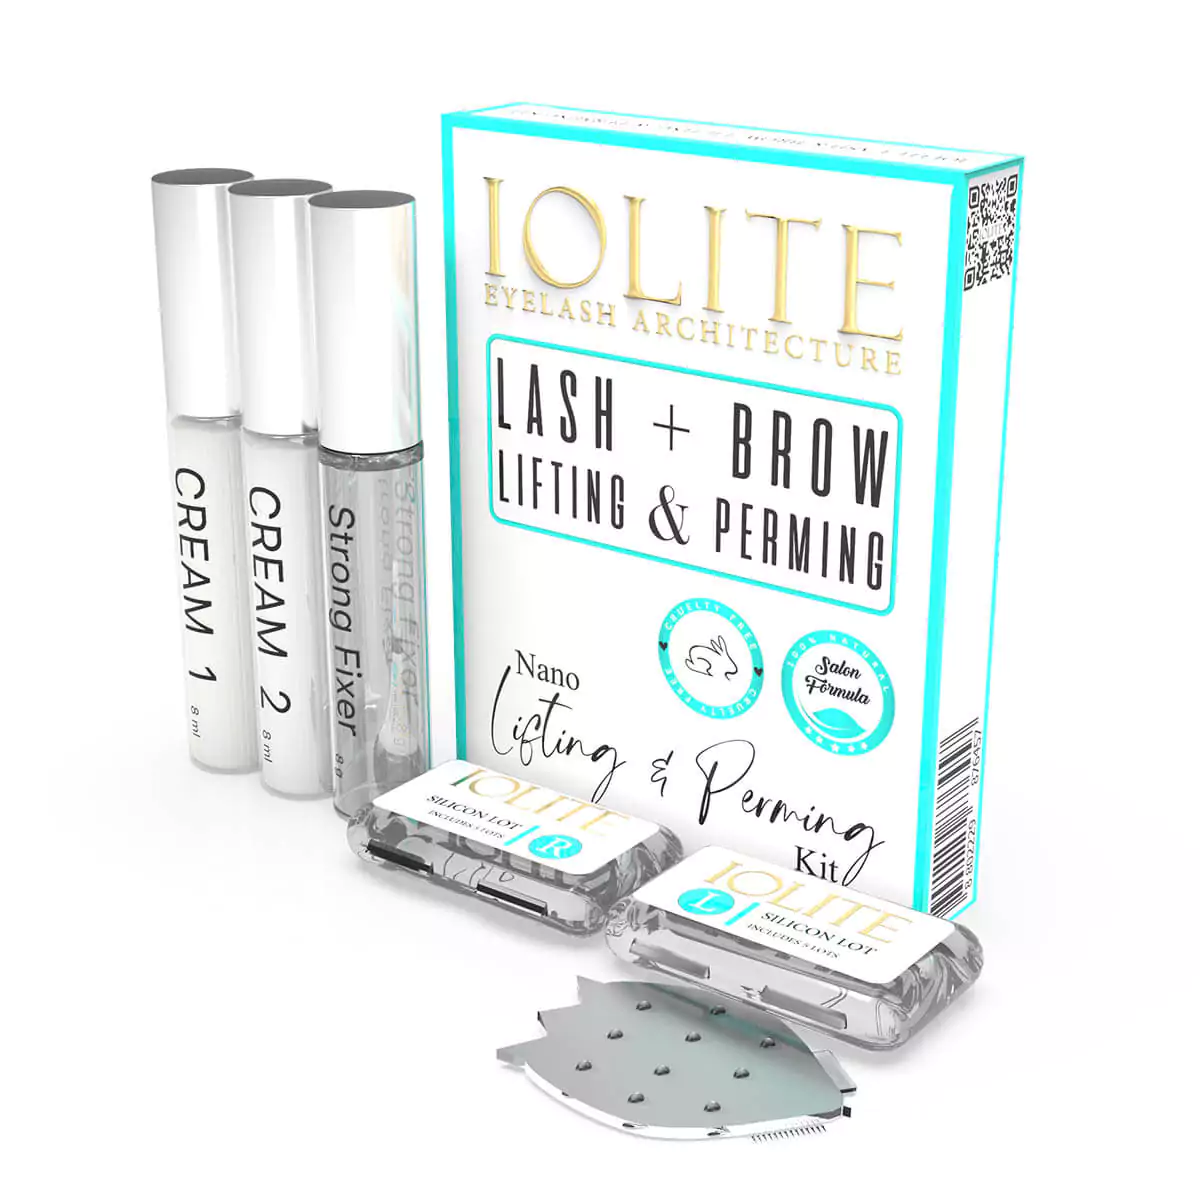 Lovate Beauty Lash Lift Kit with Color | Lash Lift Tool | Brow Lamination Kit | Eyelash Lift Kit | Eyelash Perm Kit | Eyebrow Lamination Kit